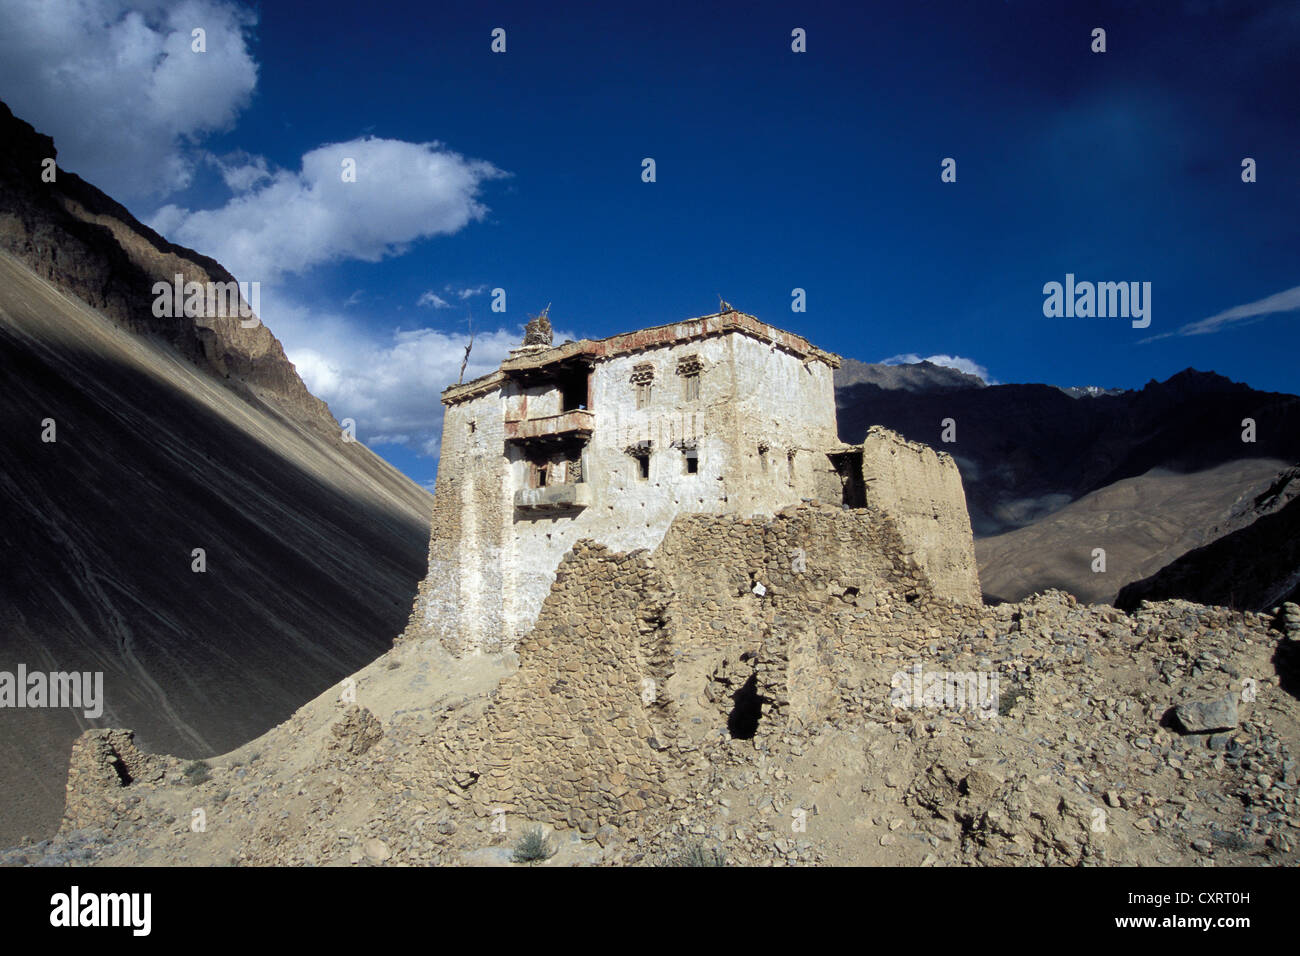 Palais de Zangla, vallée du Zanskar, Ladakh, Zanskar, le Jammu-et-Cachemire, Himalaya indien, l'Inde du Nord, Inde, Asie Banque D'Images